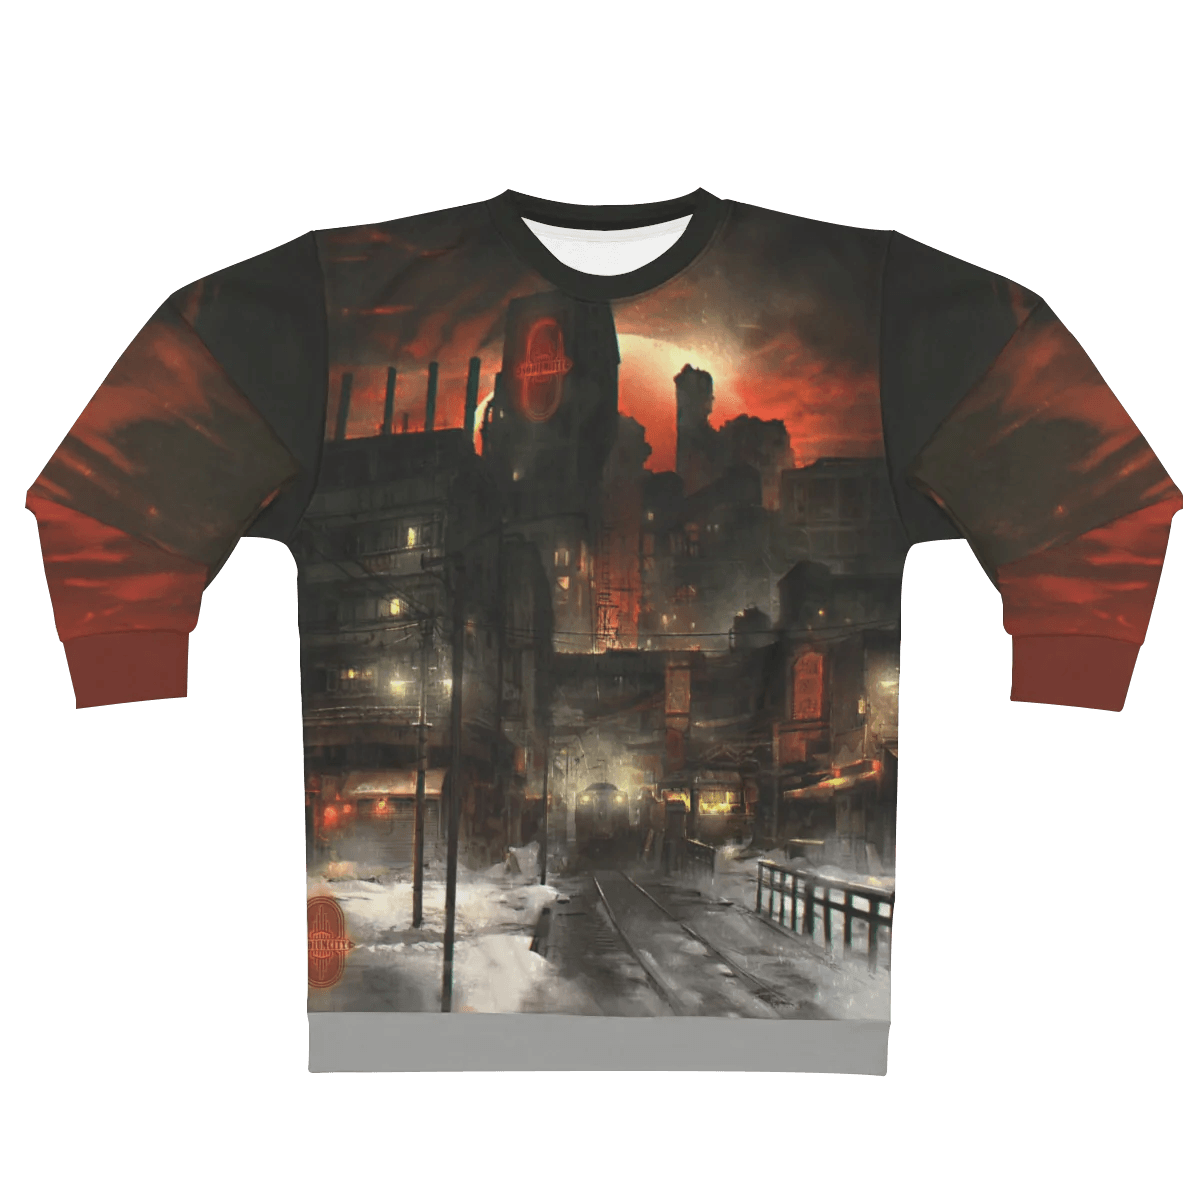 Sodium City Sweatshirt by Marnie